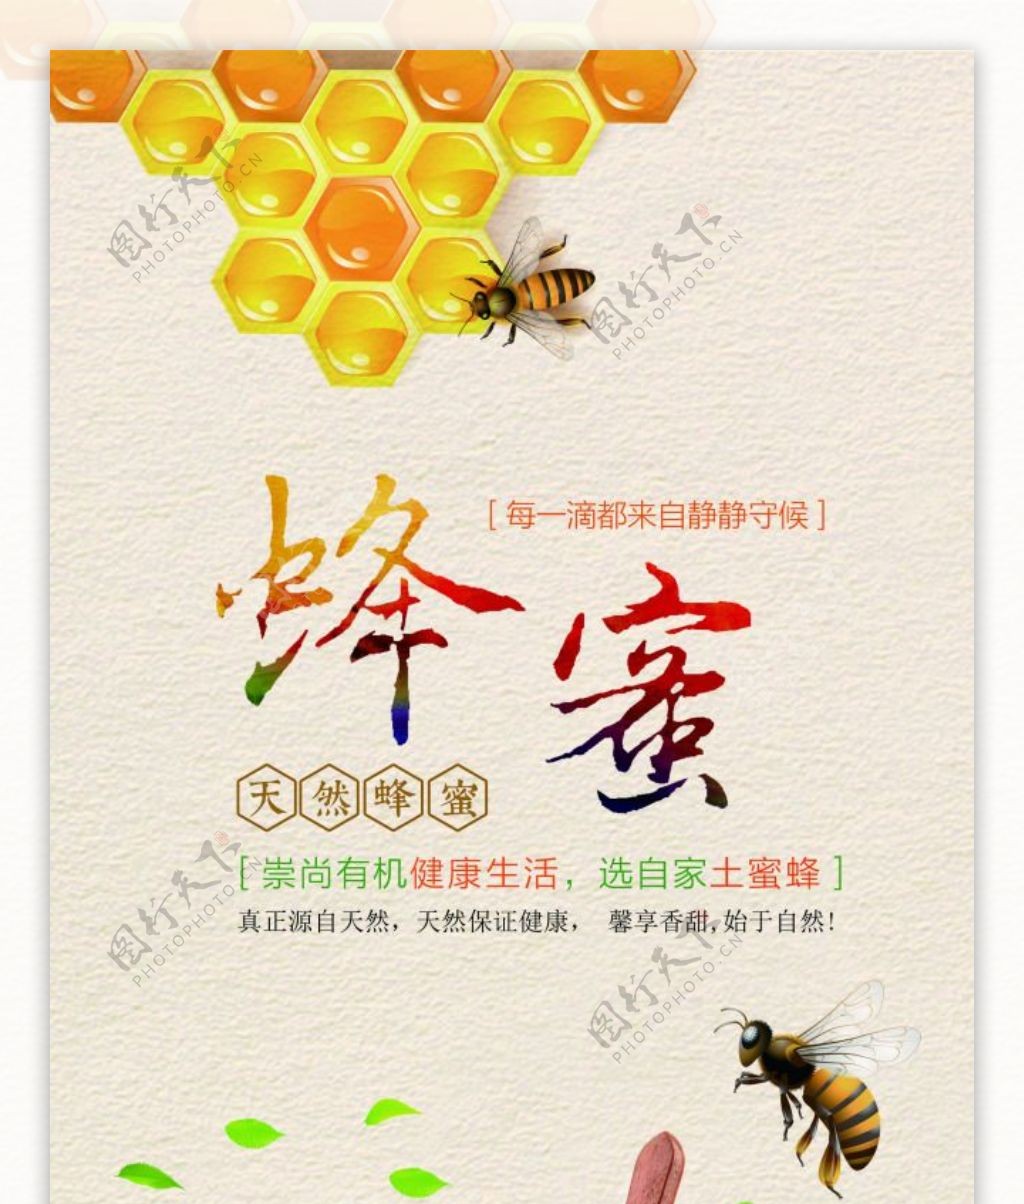 蜂蜜X展架天然蜂蜜蜜蜂蜂蜡蜂巢